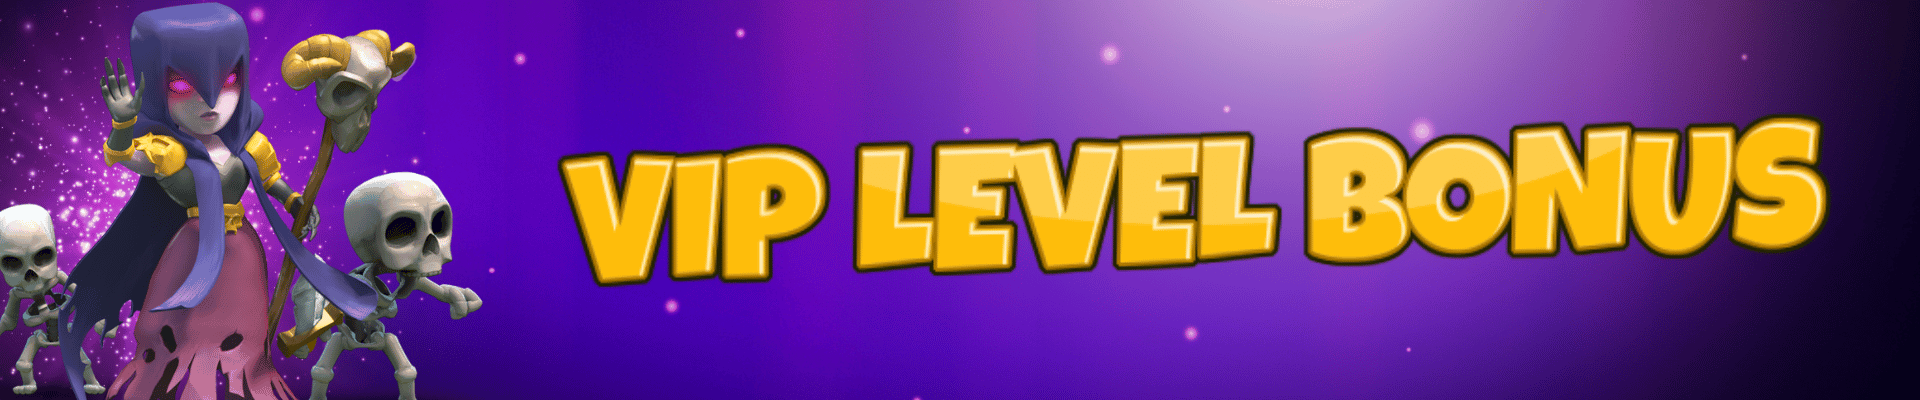 megapayaman_vip-level-bonus_banner